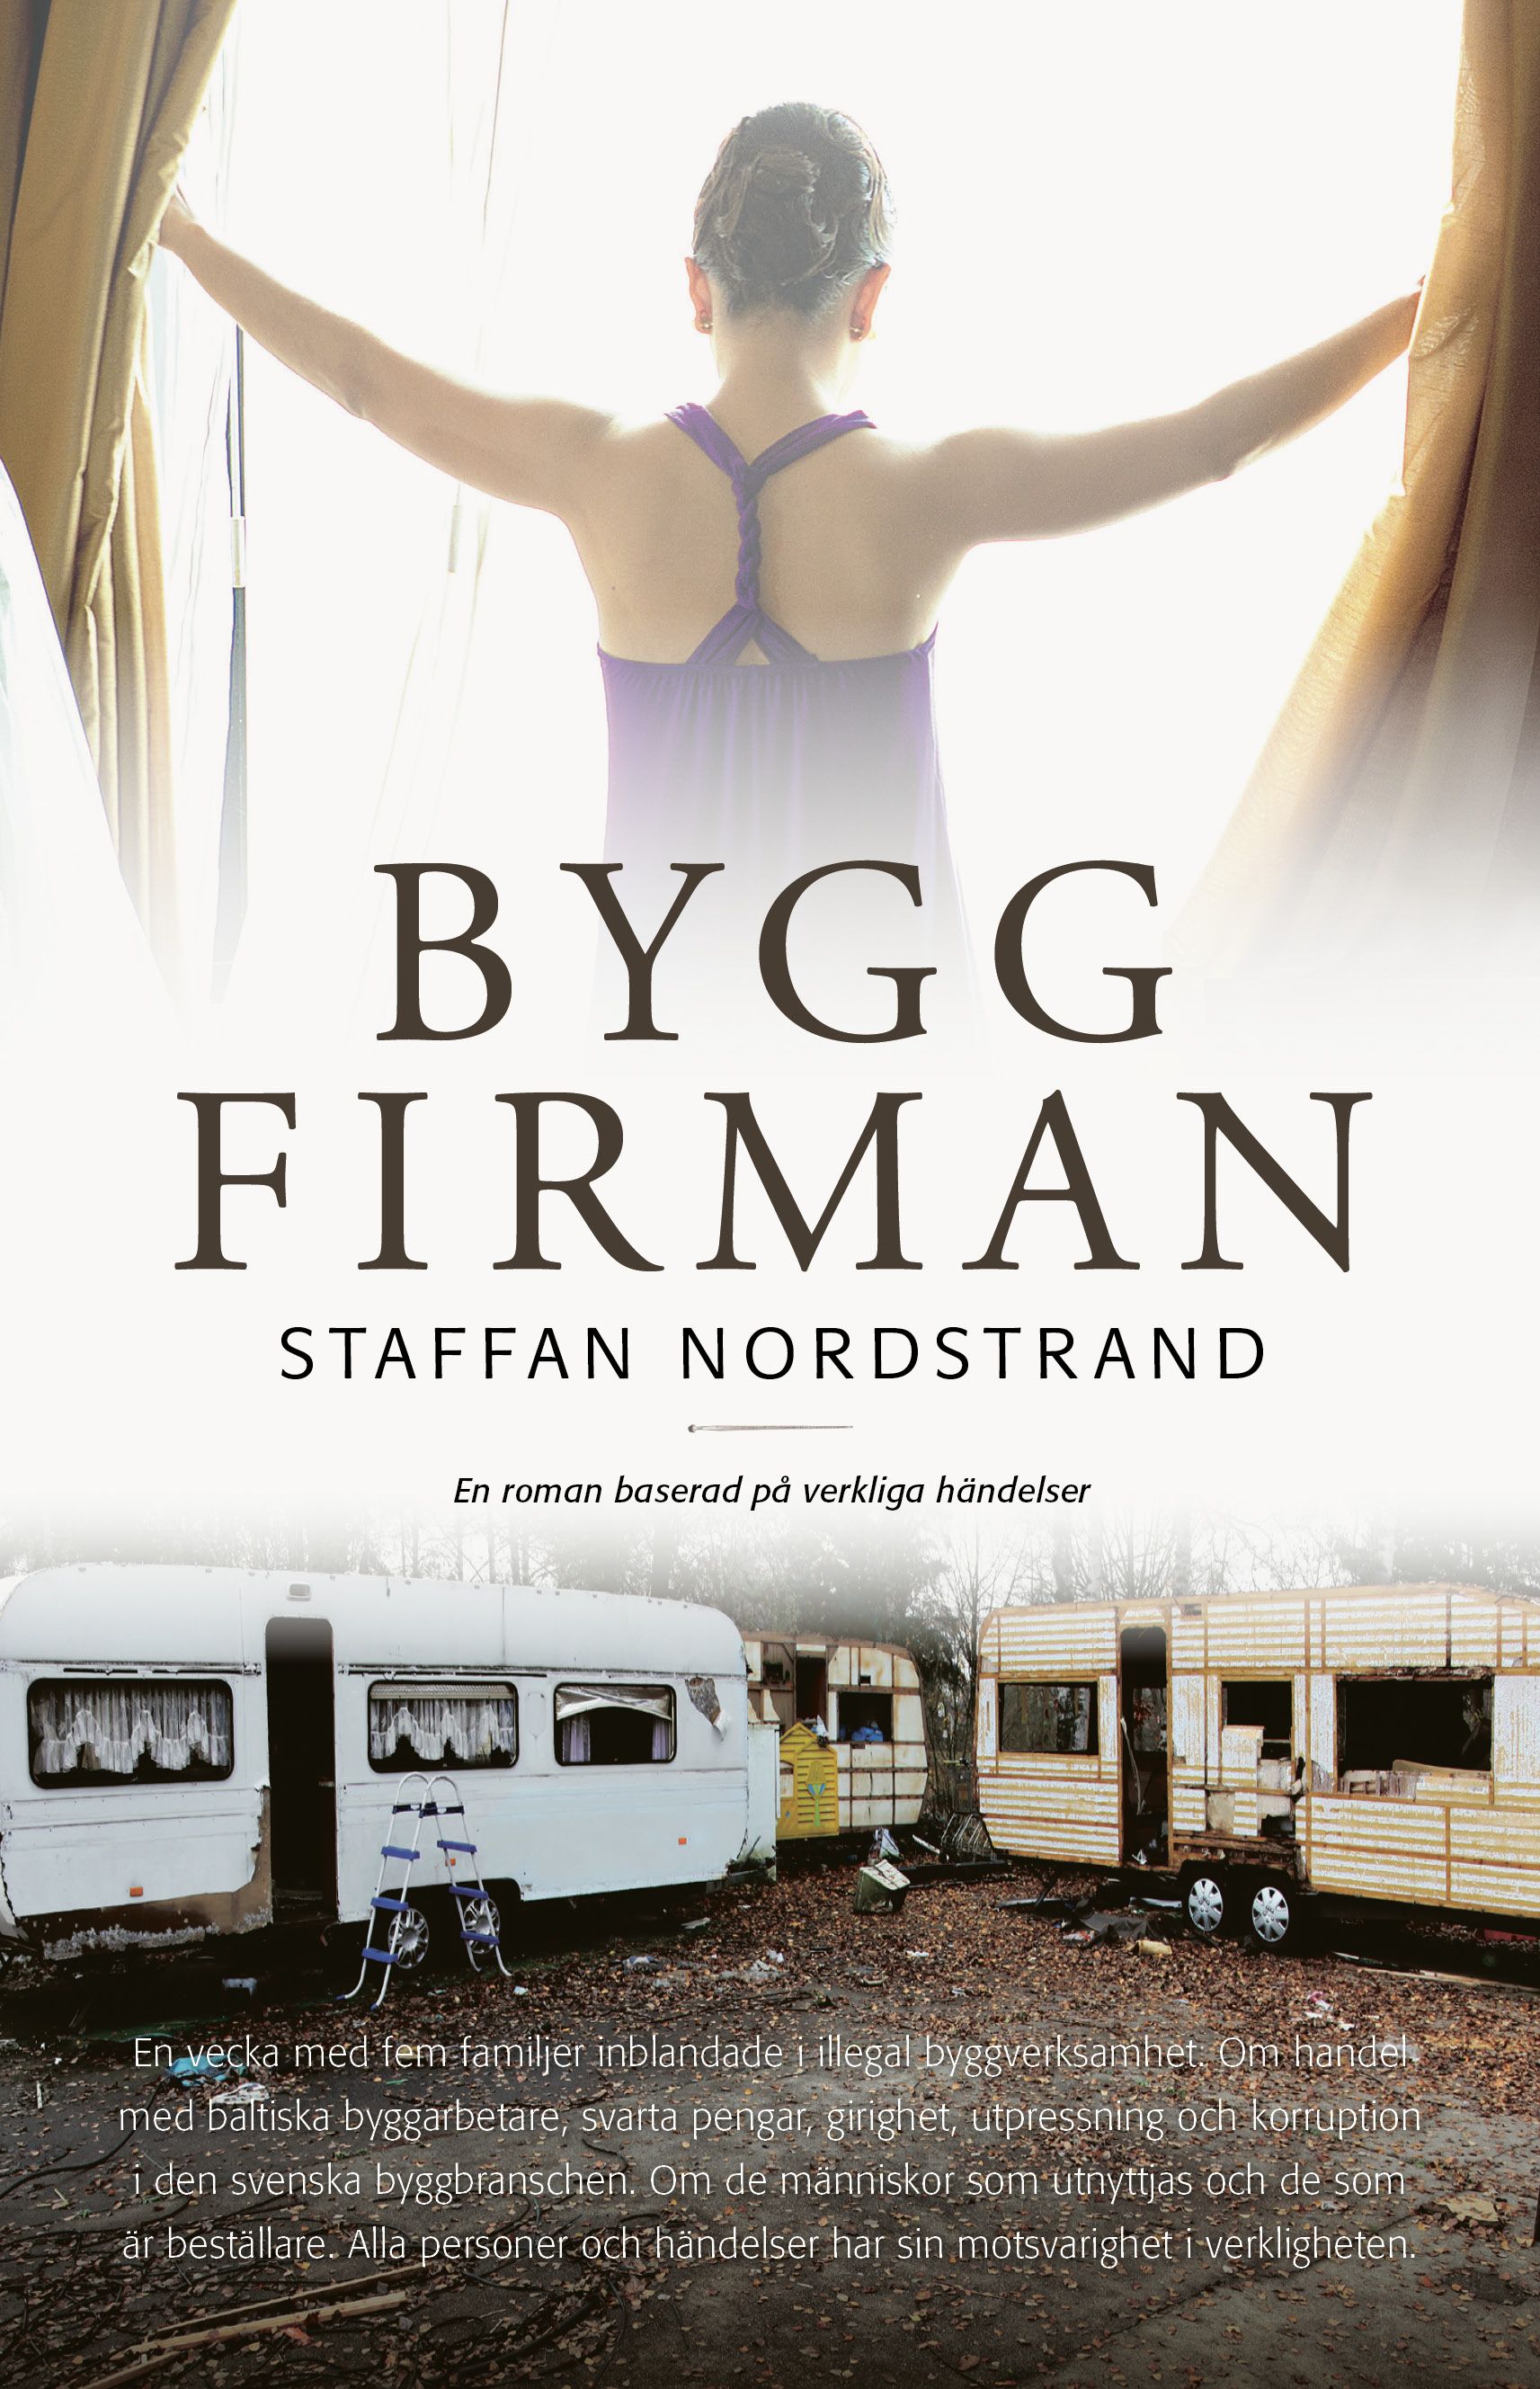 Byggfirman, e-bog af Staffan Nordstrand